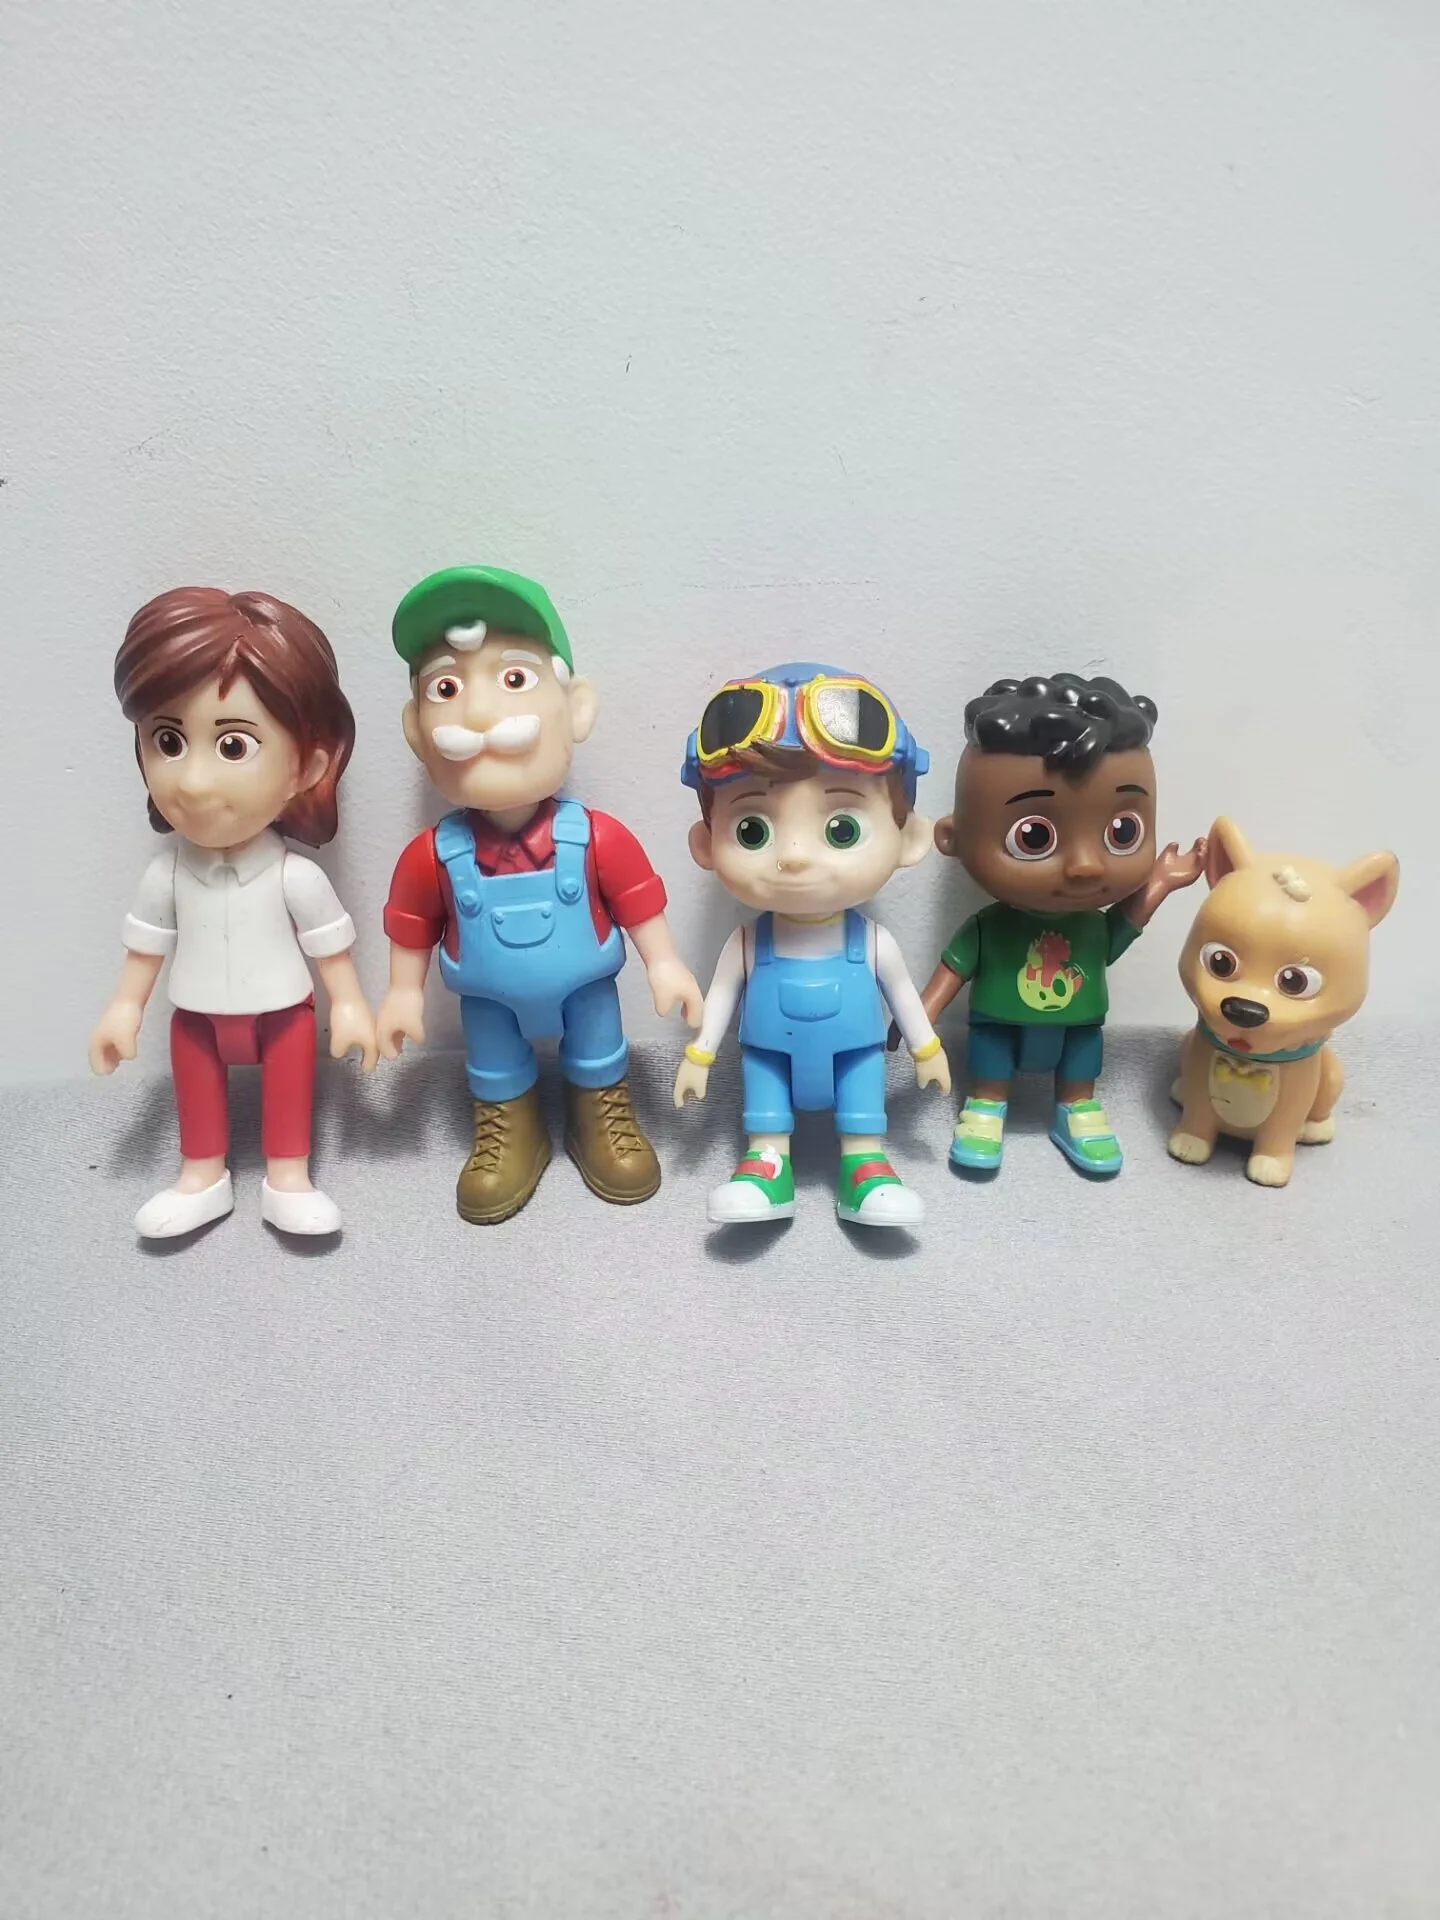 

Экшн-фигурки супер Джоджо Коко, арбуз, школьный автобус, персонажи мультфильмов, аниме фигурки, милая декоративная кукла, детские игрушки, 5 шт.